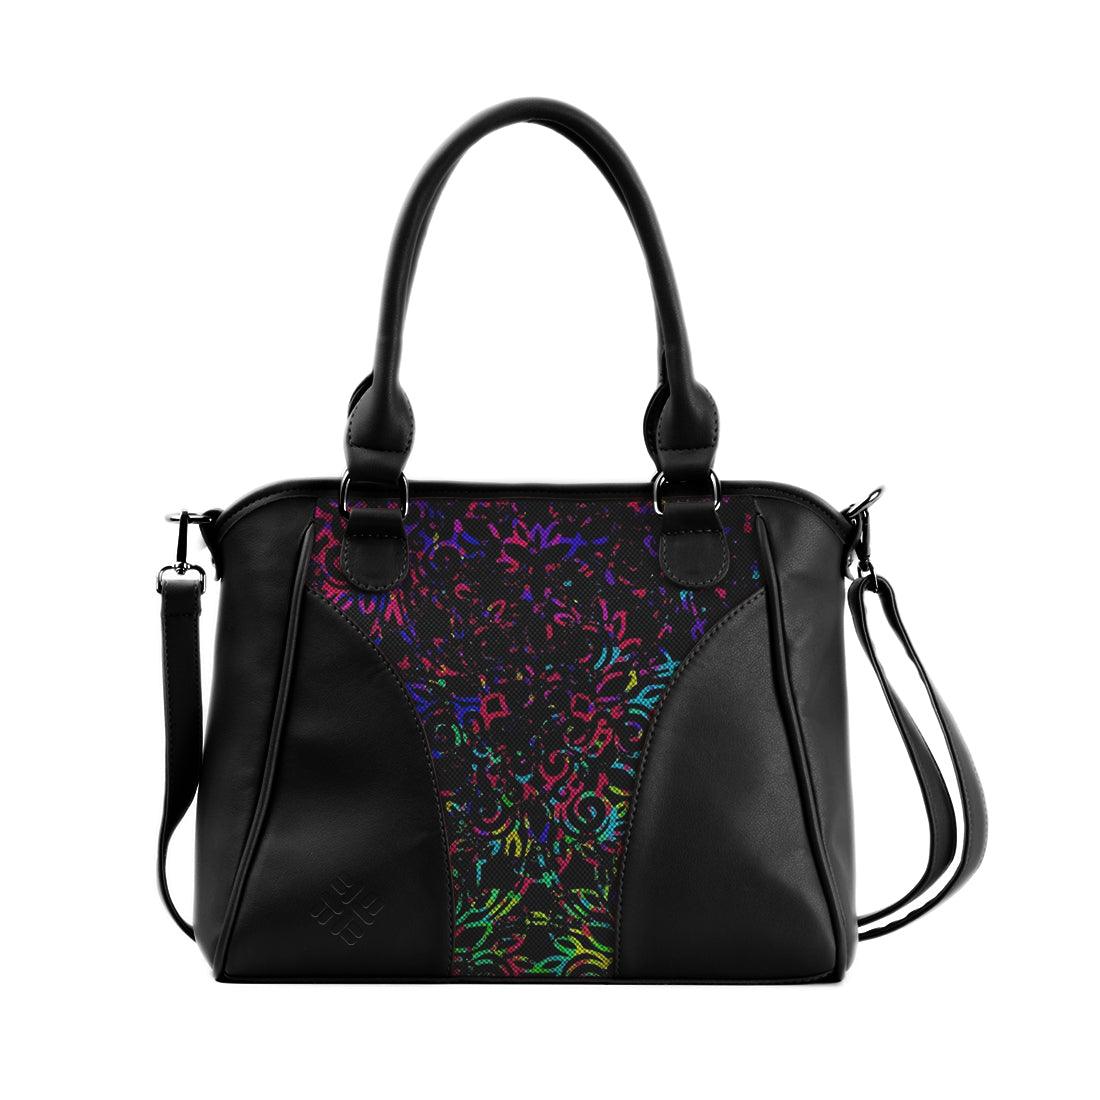 Black Ladies Handbag Neon